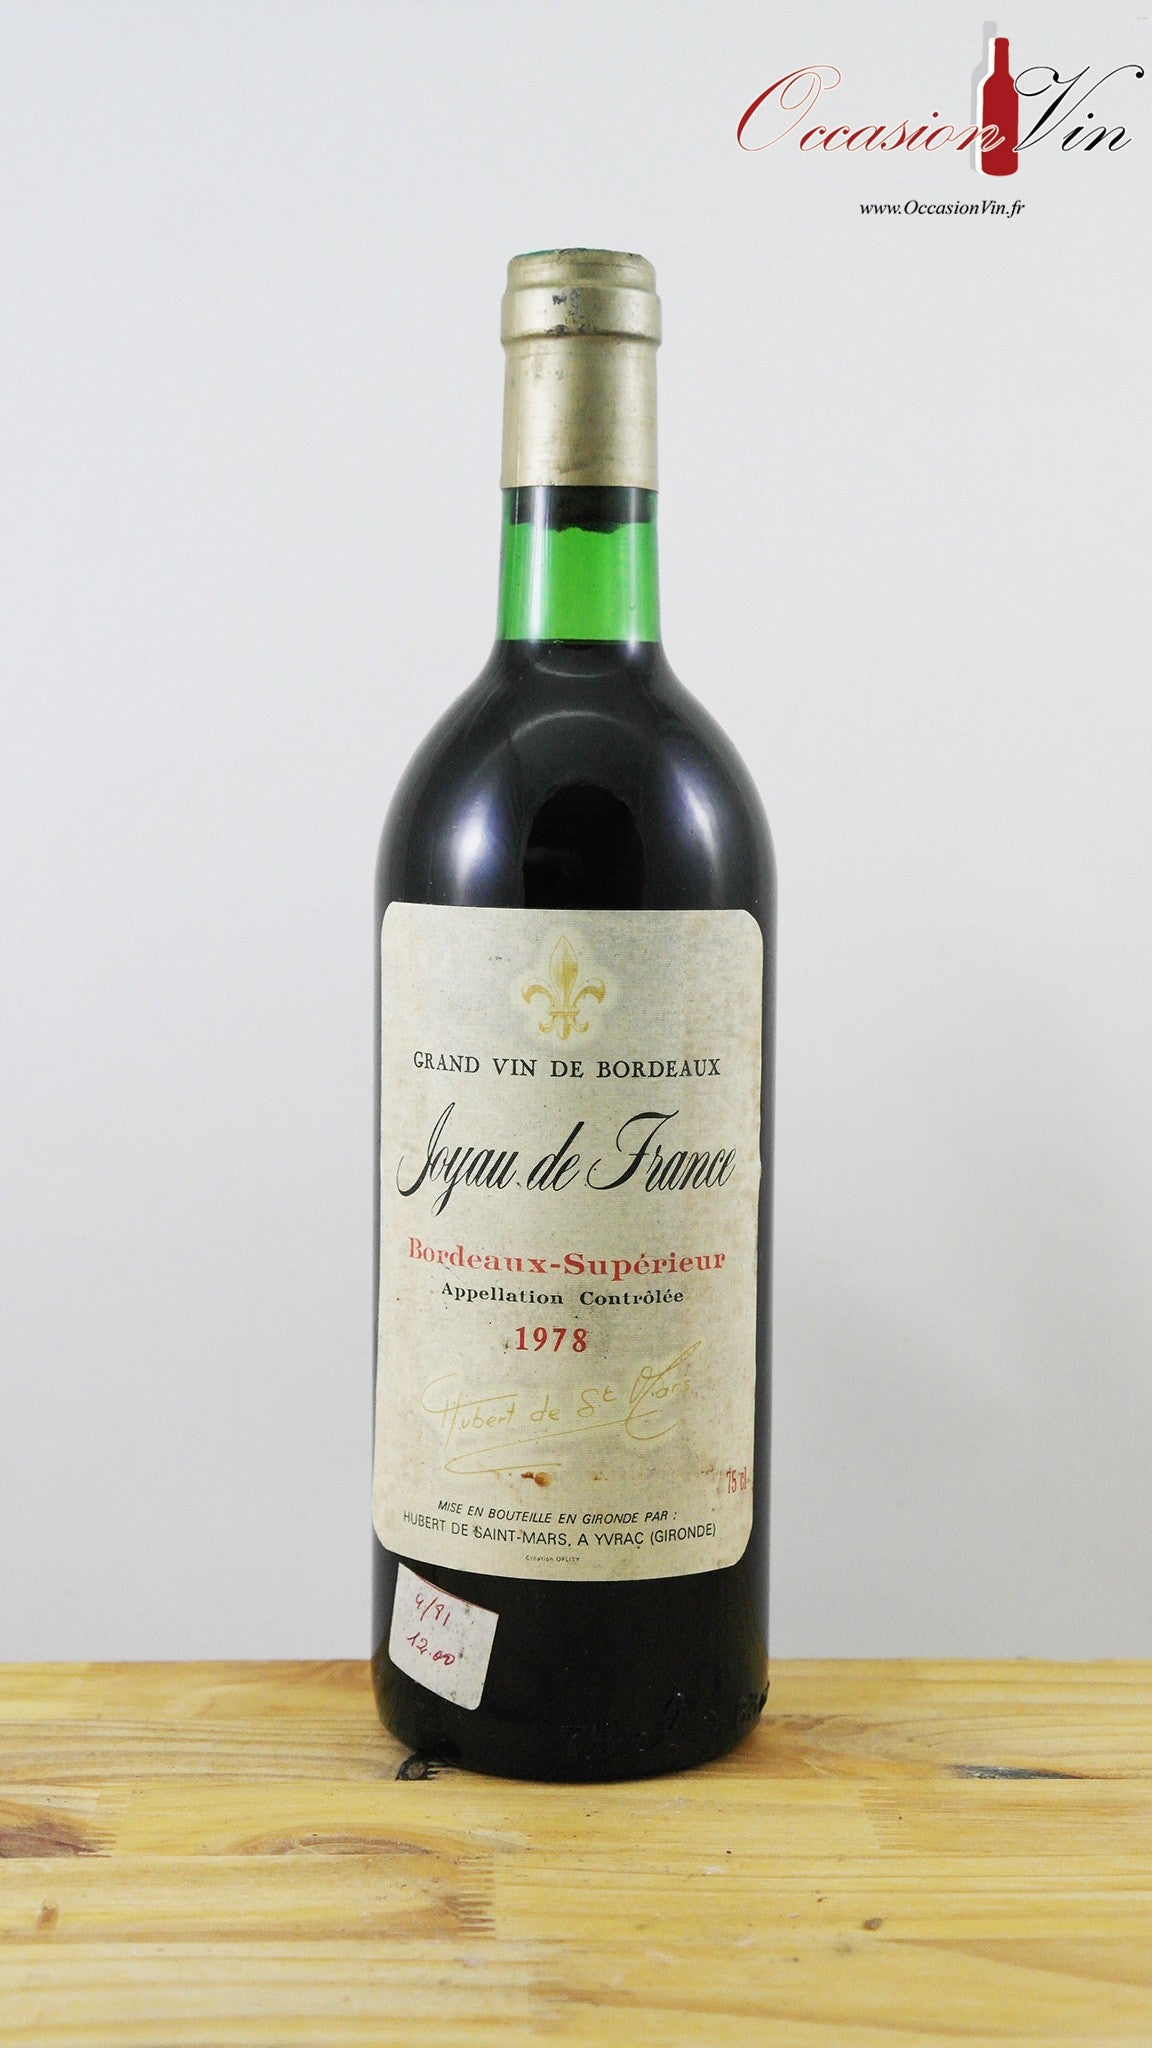 Joyau de France Vin 1978